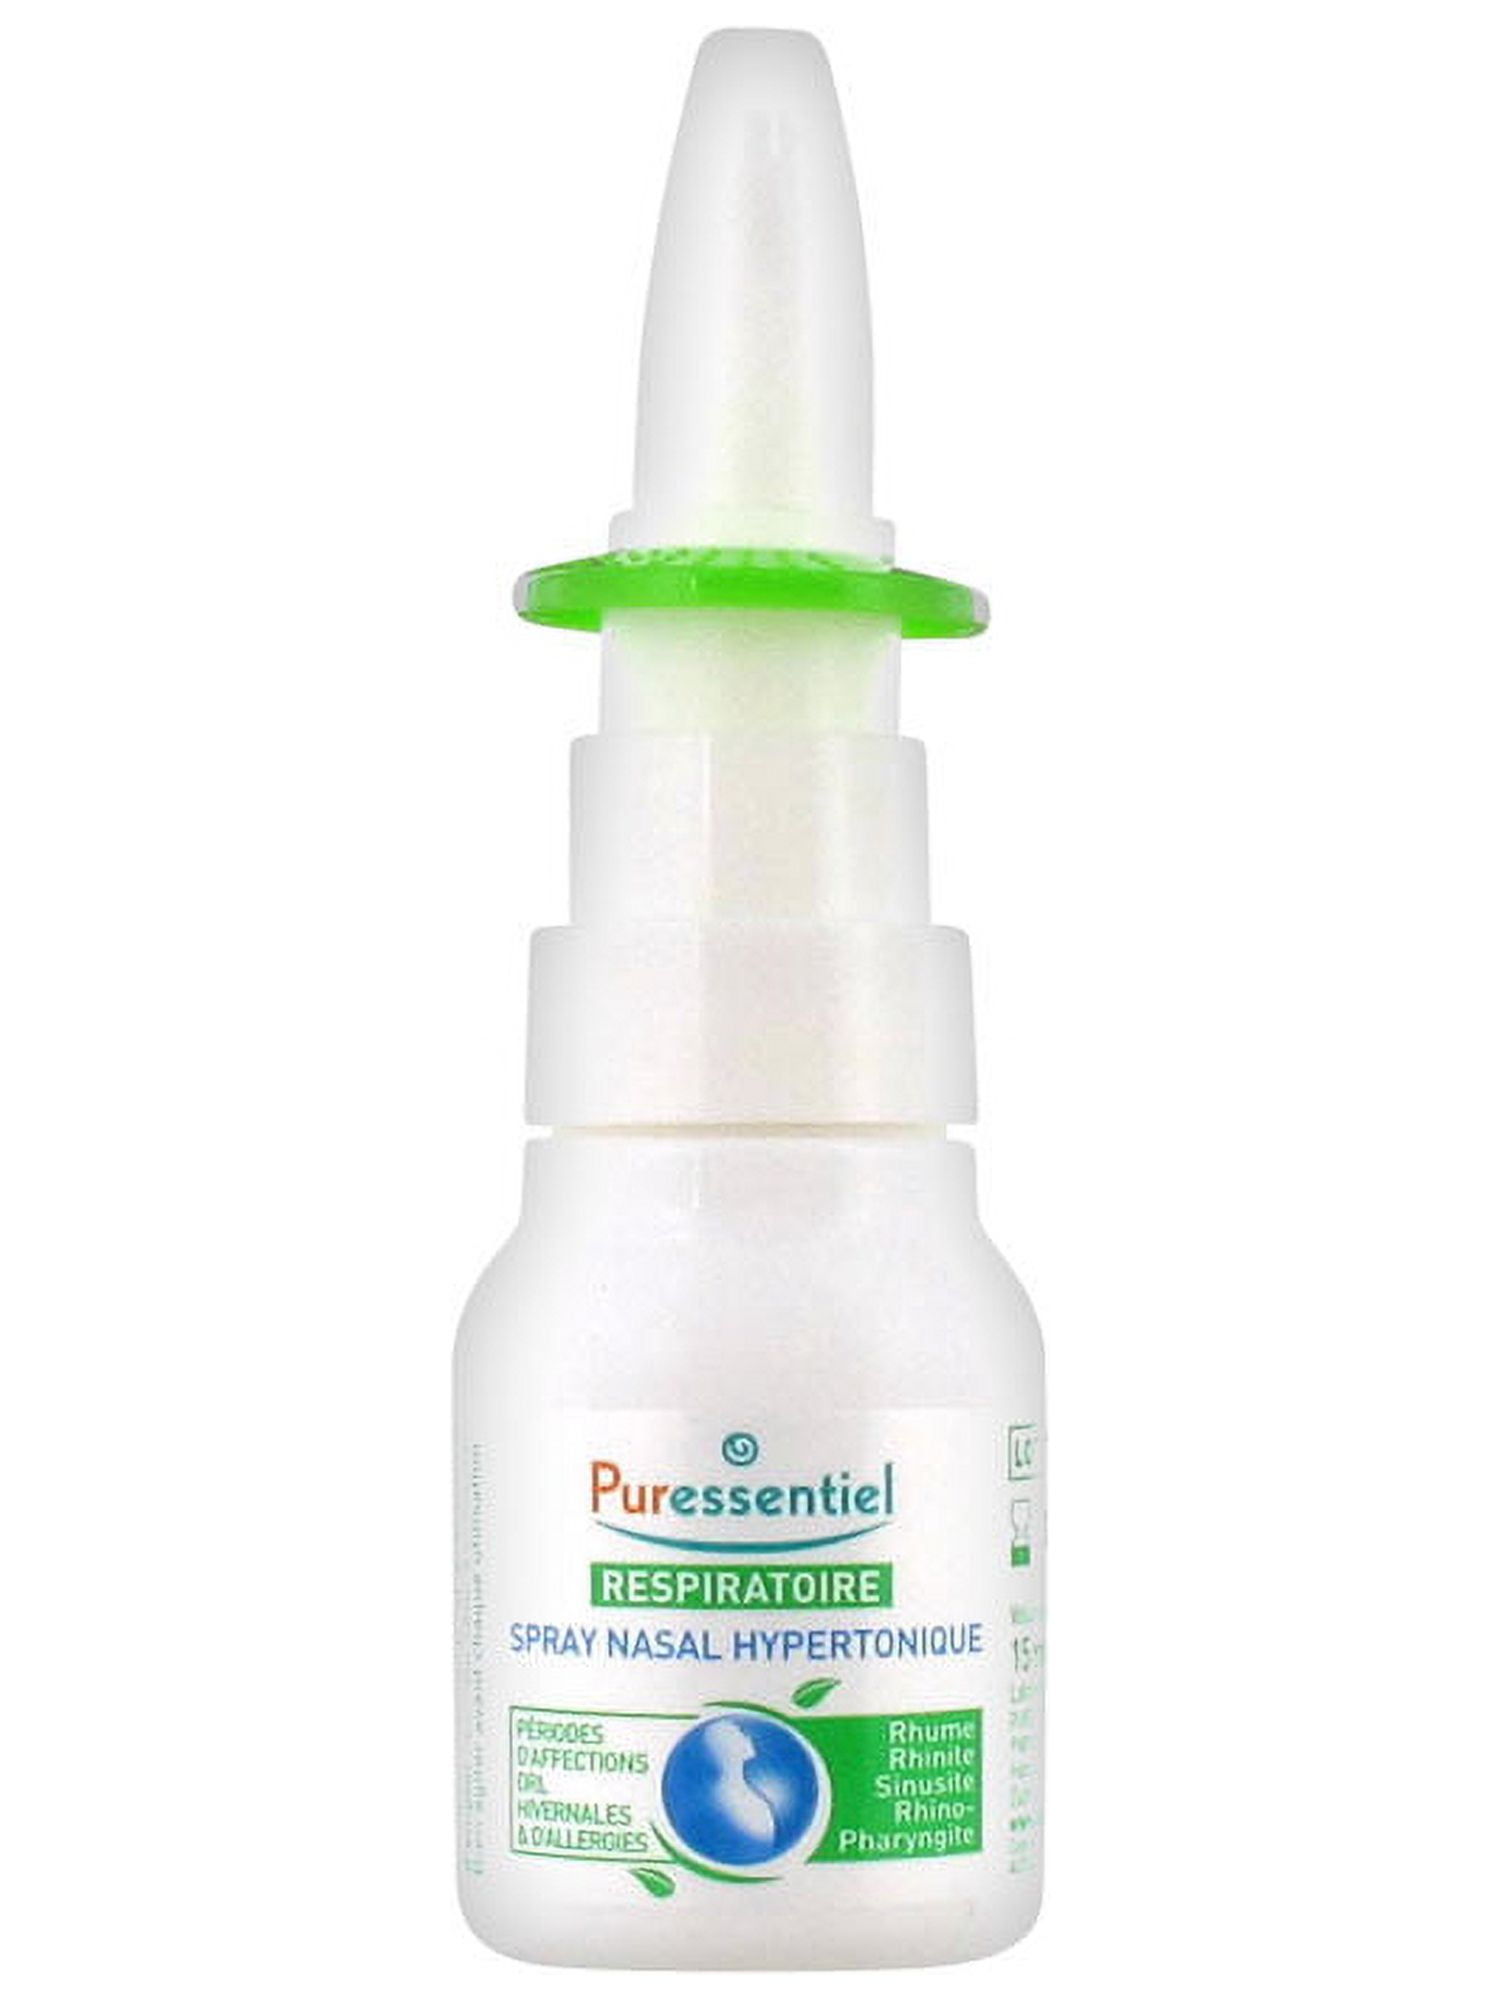 QUIES Spray Nasal Anti-Ronflement 15ML